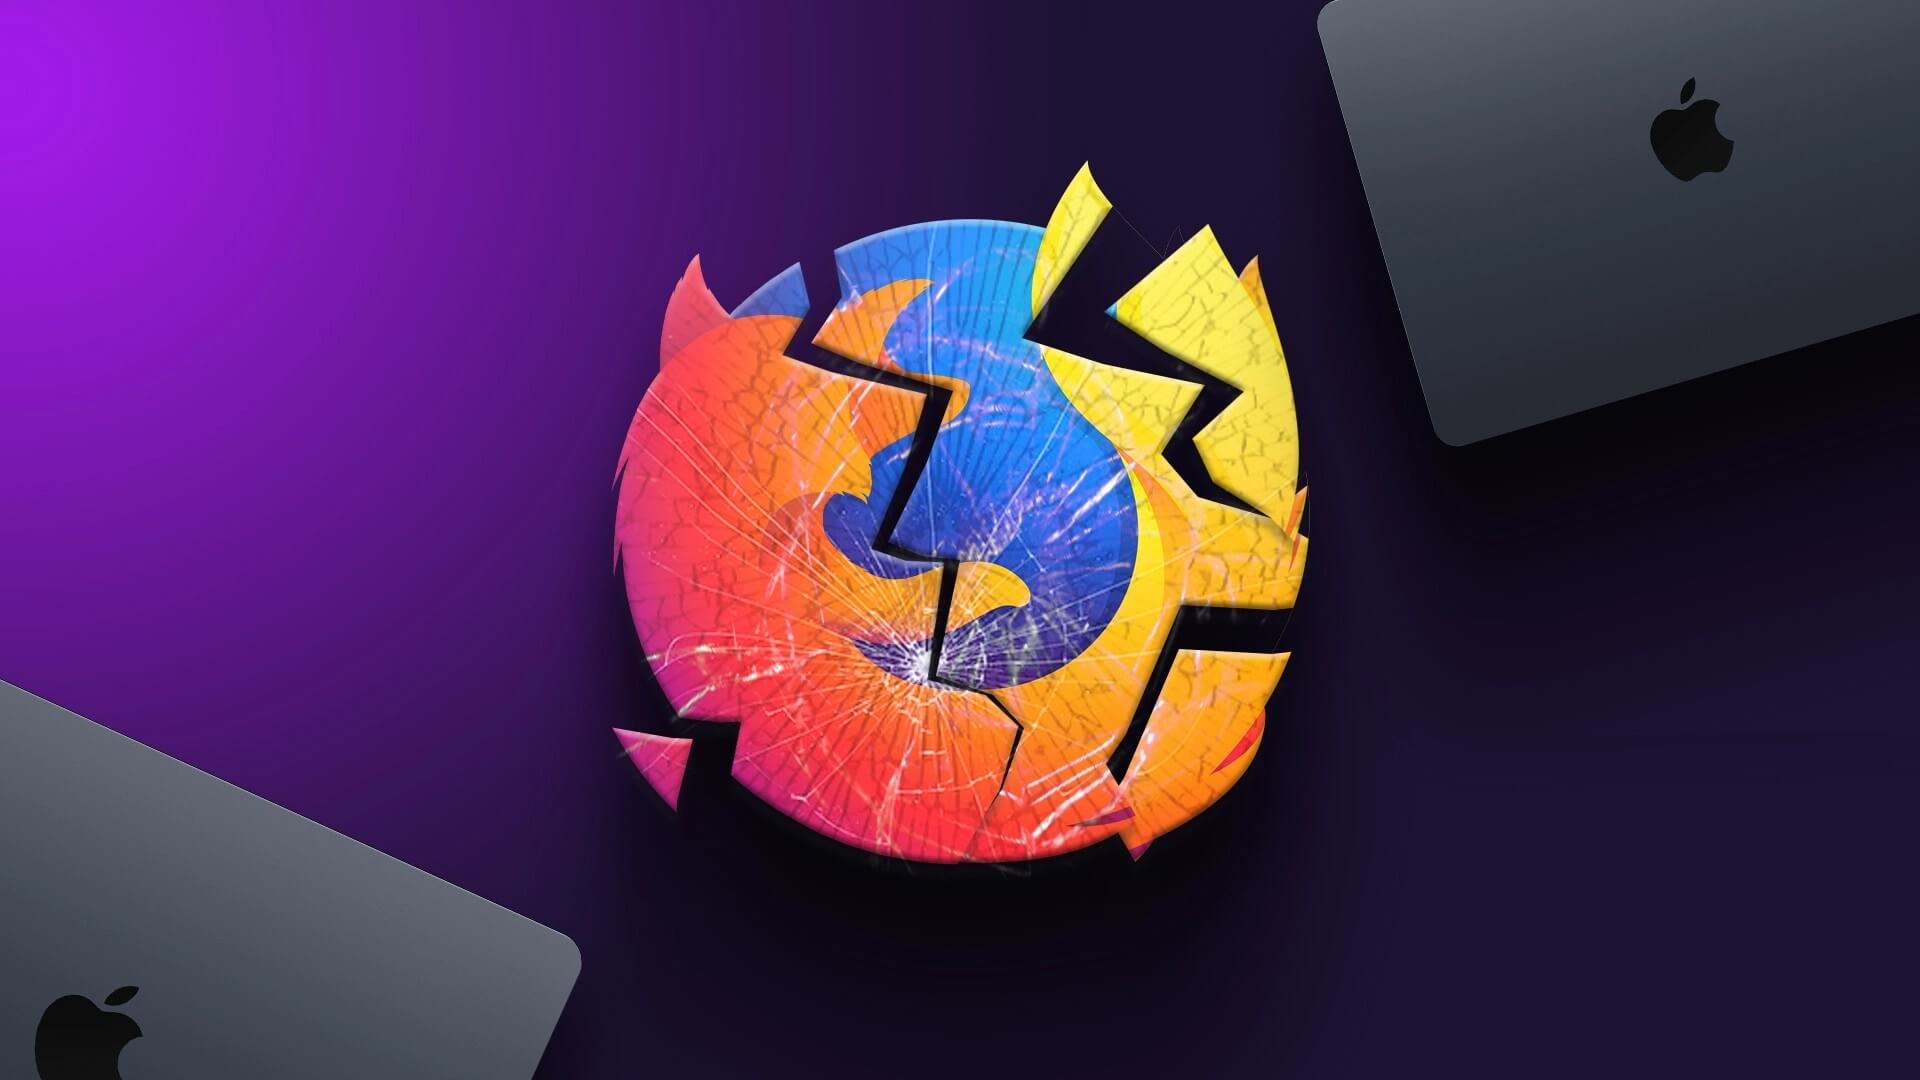 أفضل 6 إصلاحات لإغلاق Firefox تلقائيًا على Mac - %categories